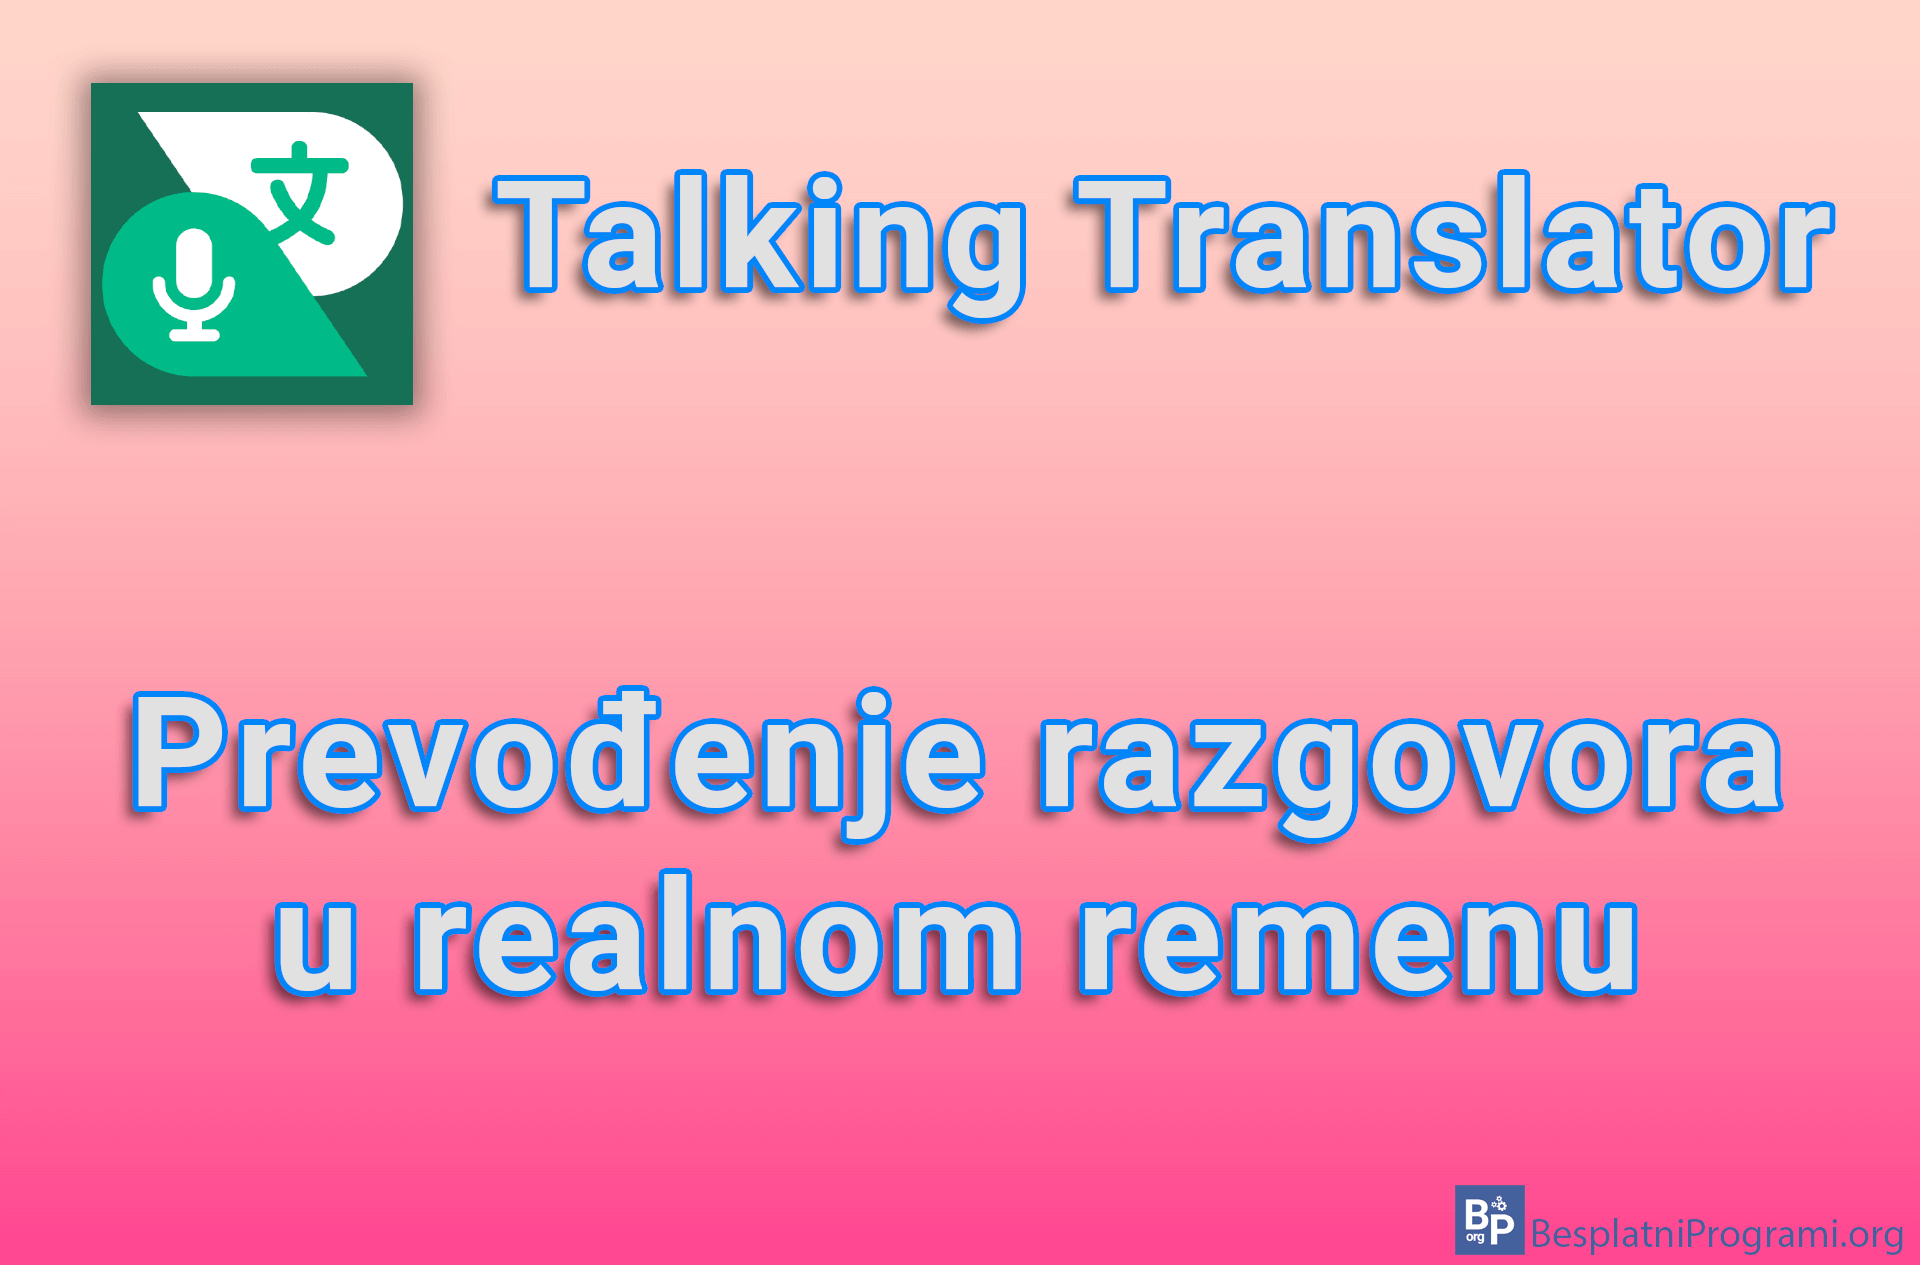 Talking Translator - Prevođenje razgovora u realnom remenu